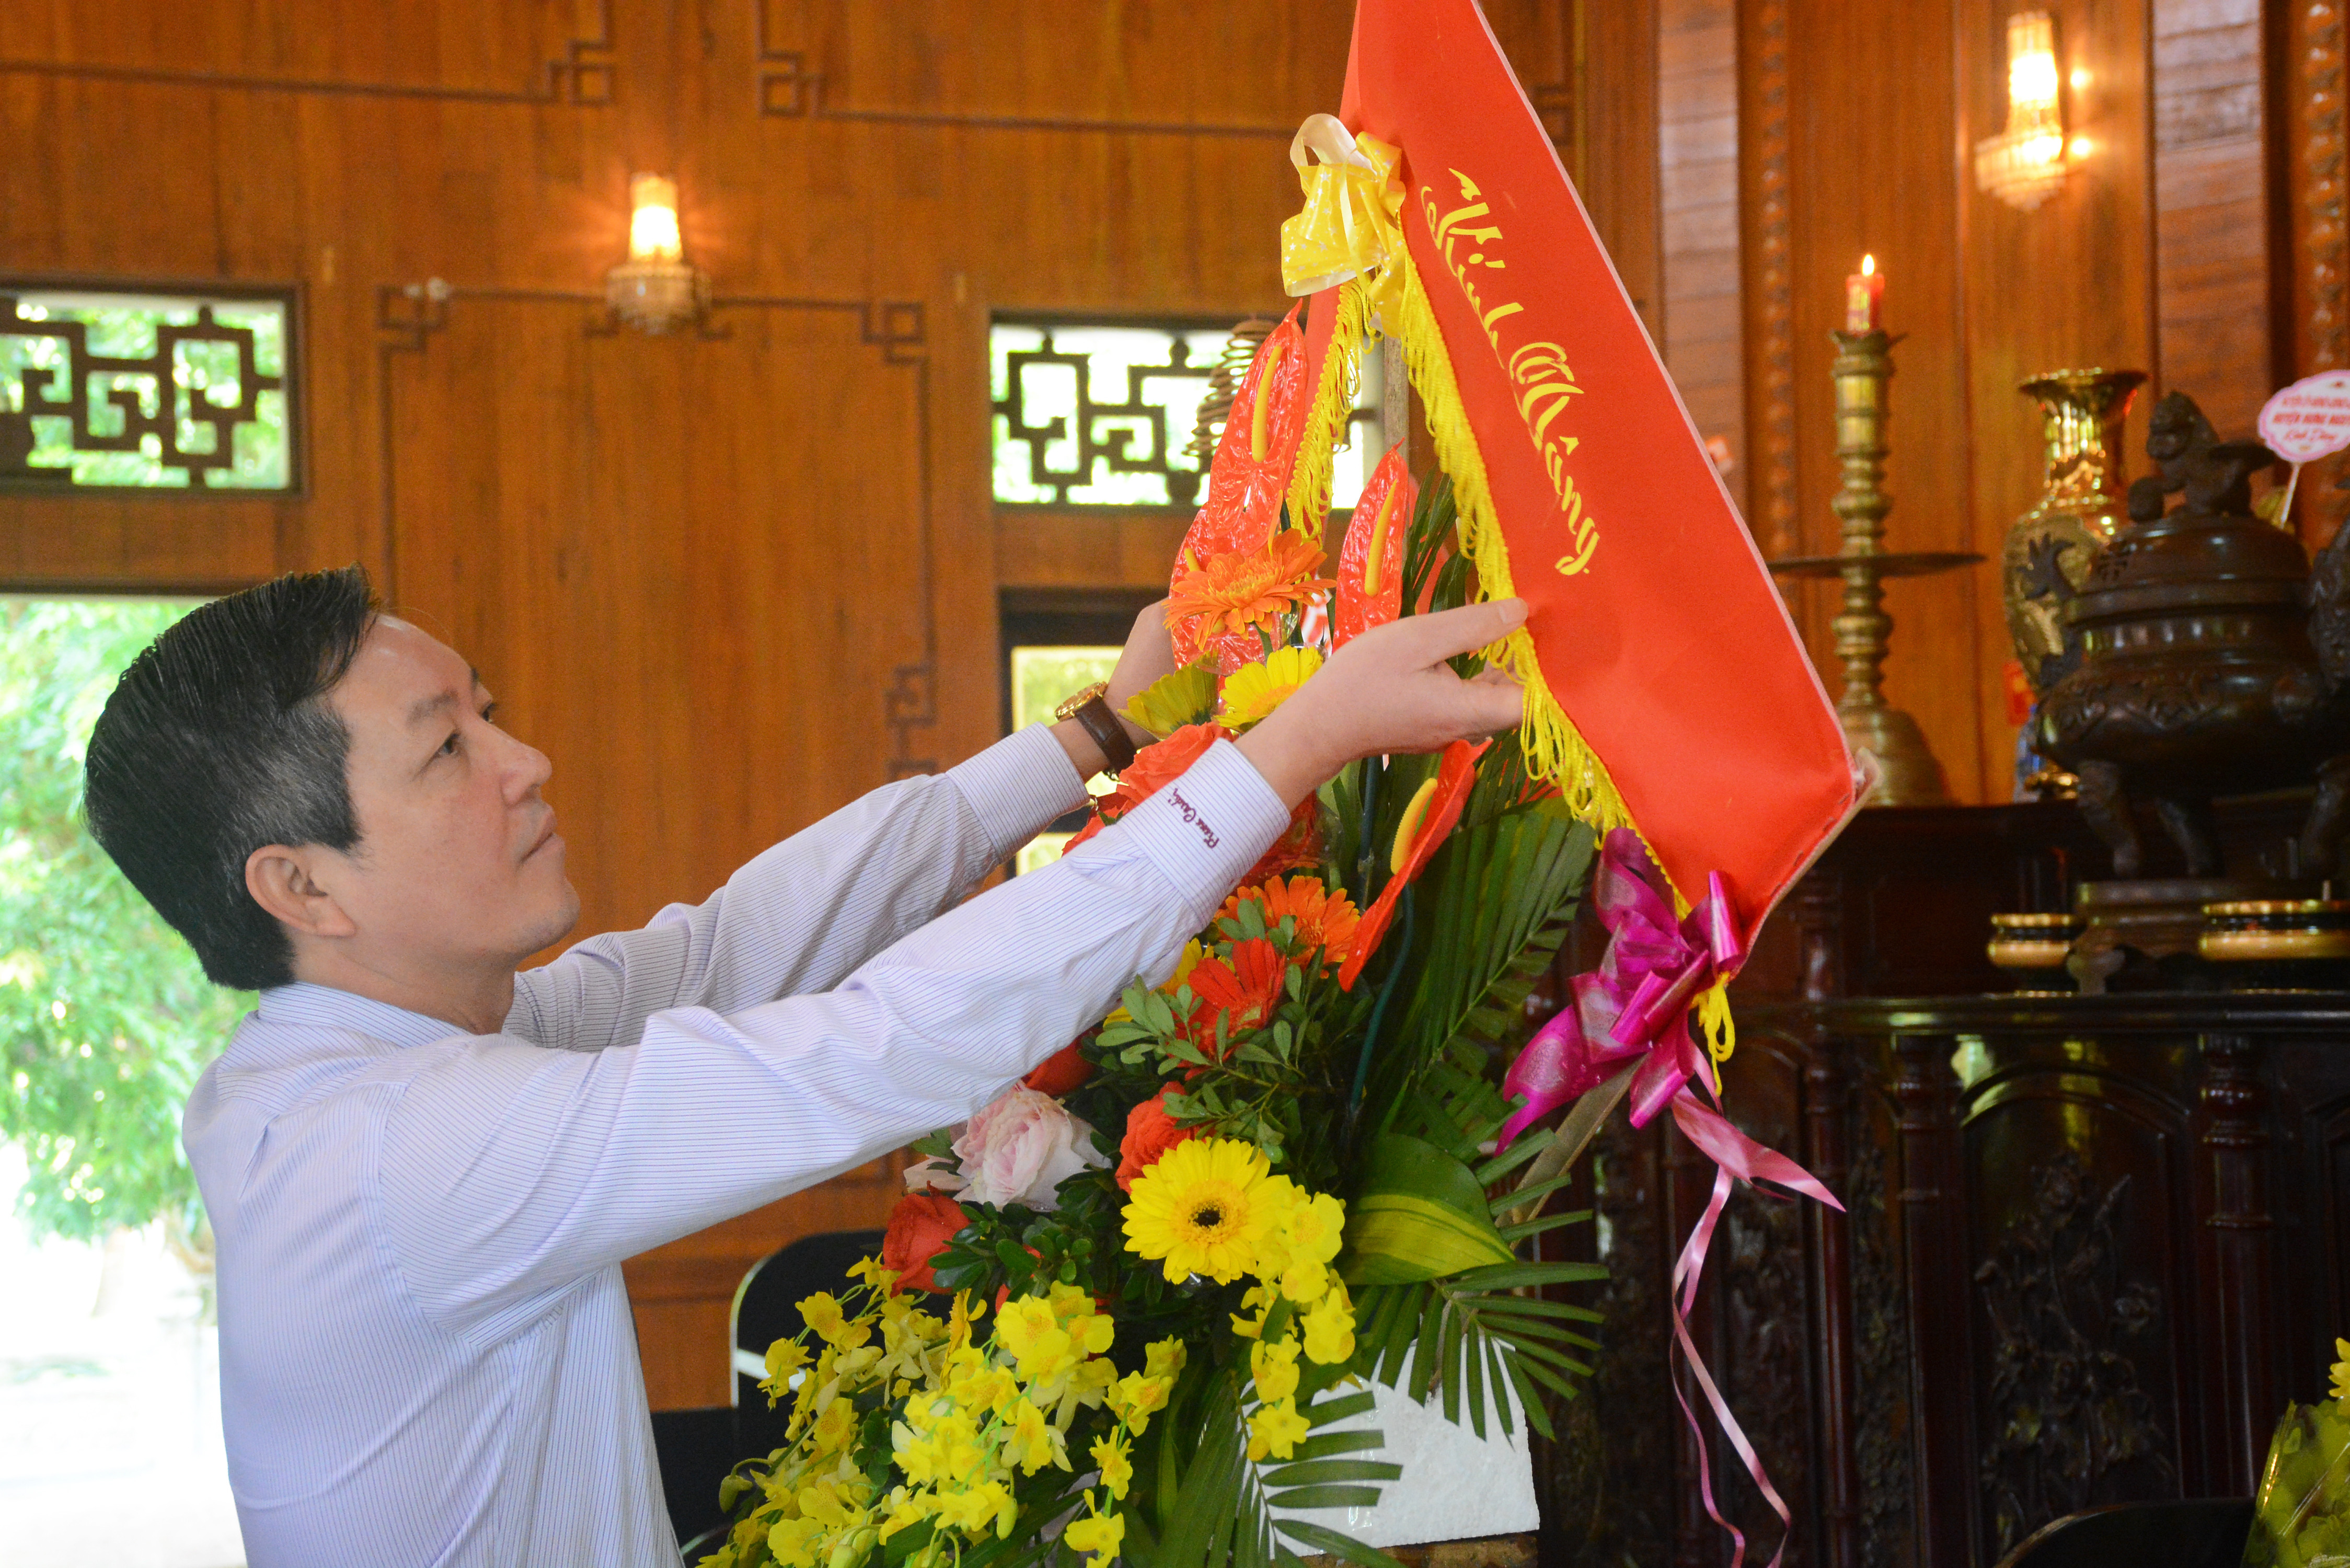 Phó Chủ tịch Thường trực Trung ương Hội Nông dân Việt Nam thay mặt đoàn đại biểu dâng hoa lên ban thờ Bác Hồ. Ảnh: Thu Giang